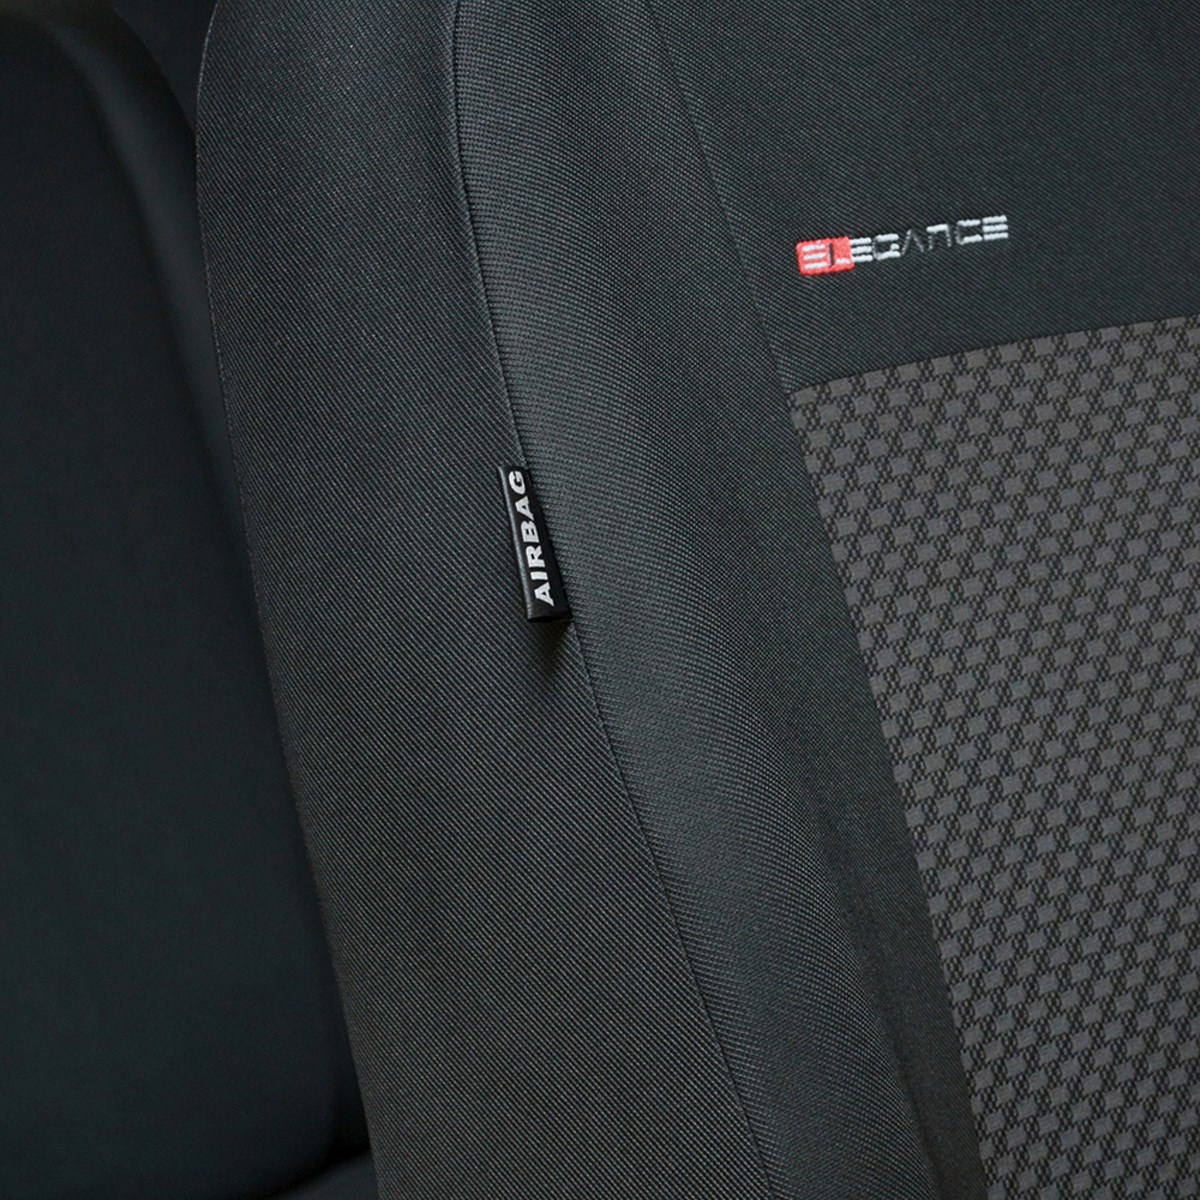 Maßgeschneiderte Sitzbezüge Auto für Ford S-MAX MPV (2006-2015) -  Autositzbezüge Schonbezüge für Autositze - 5 Sitze - E3 Typ 3